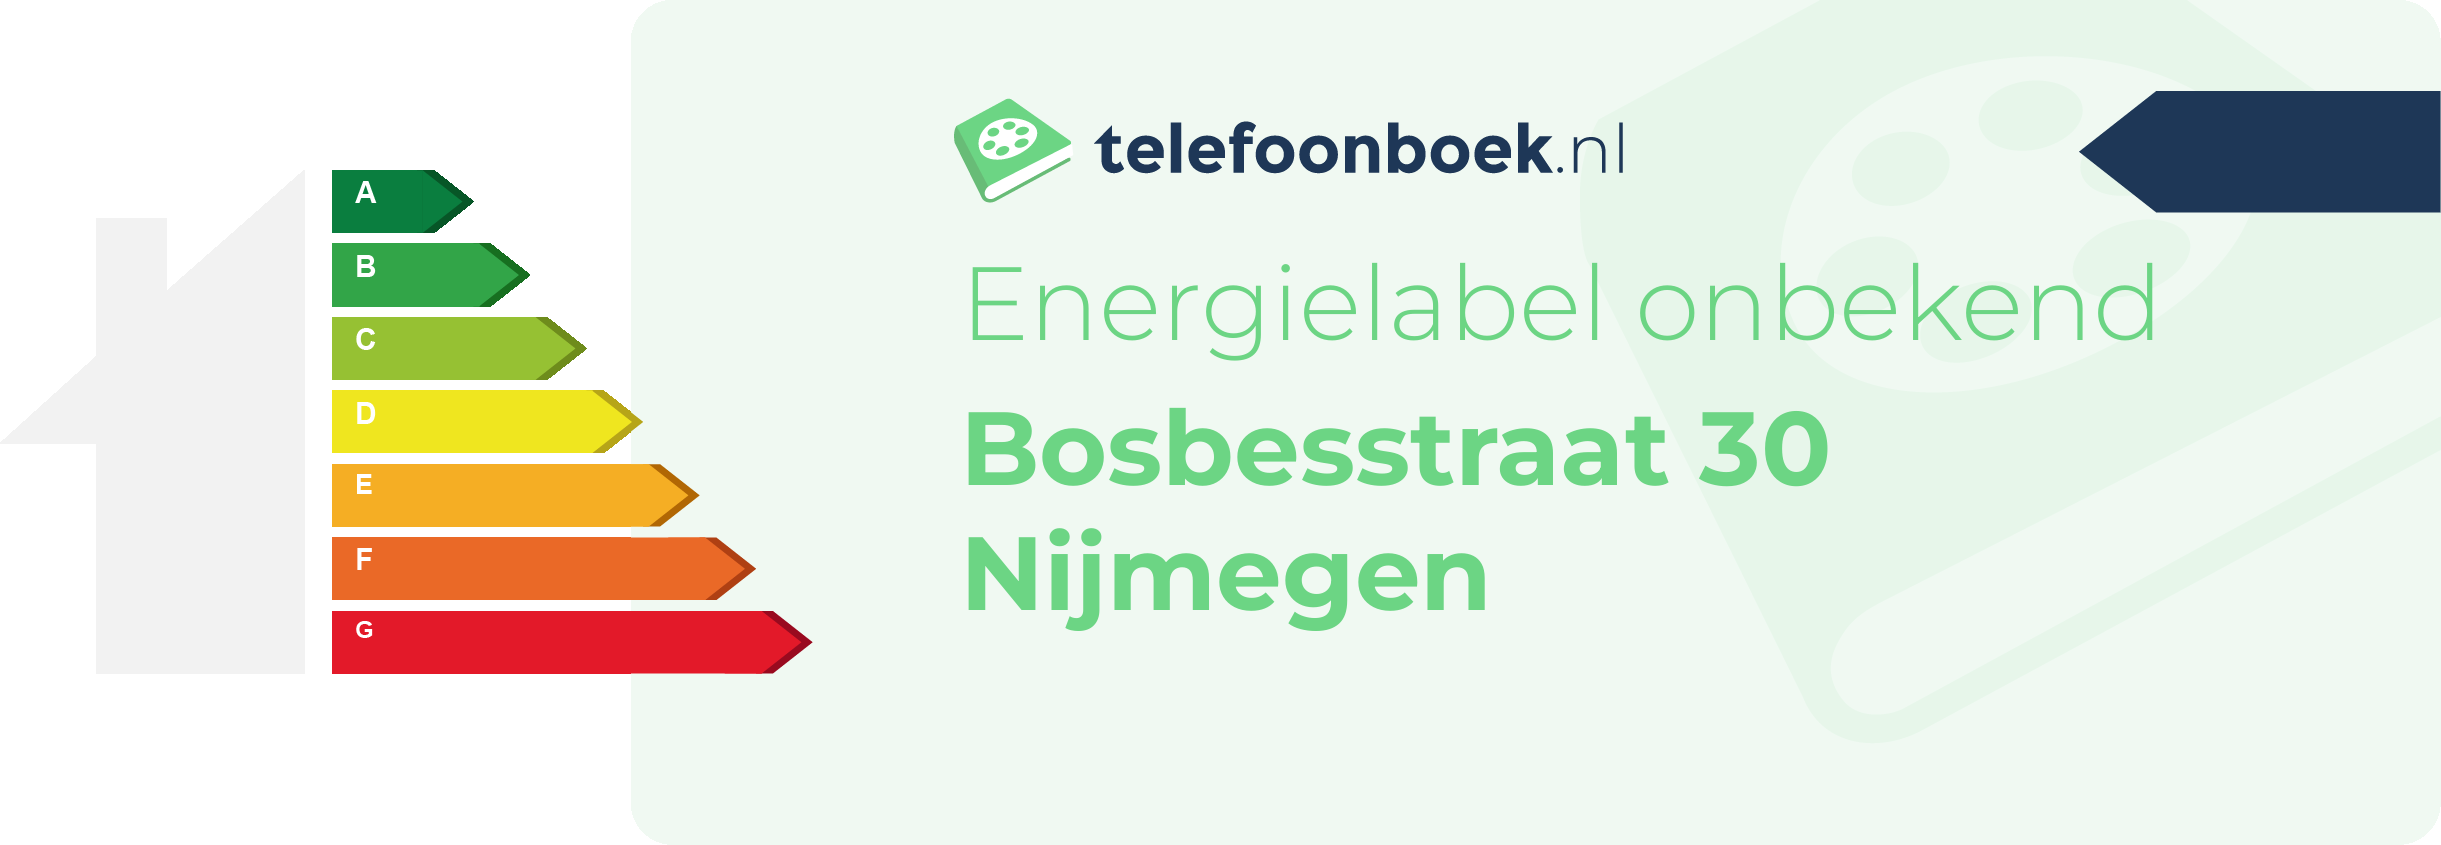 Energielabel Bosbesstraat 30 Nijmegen